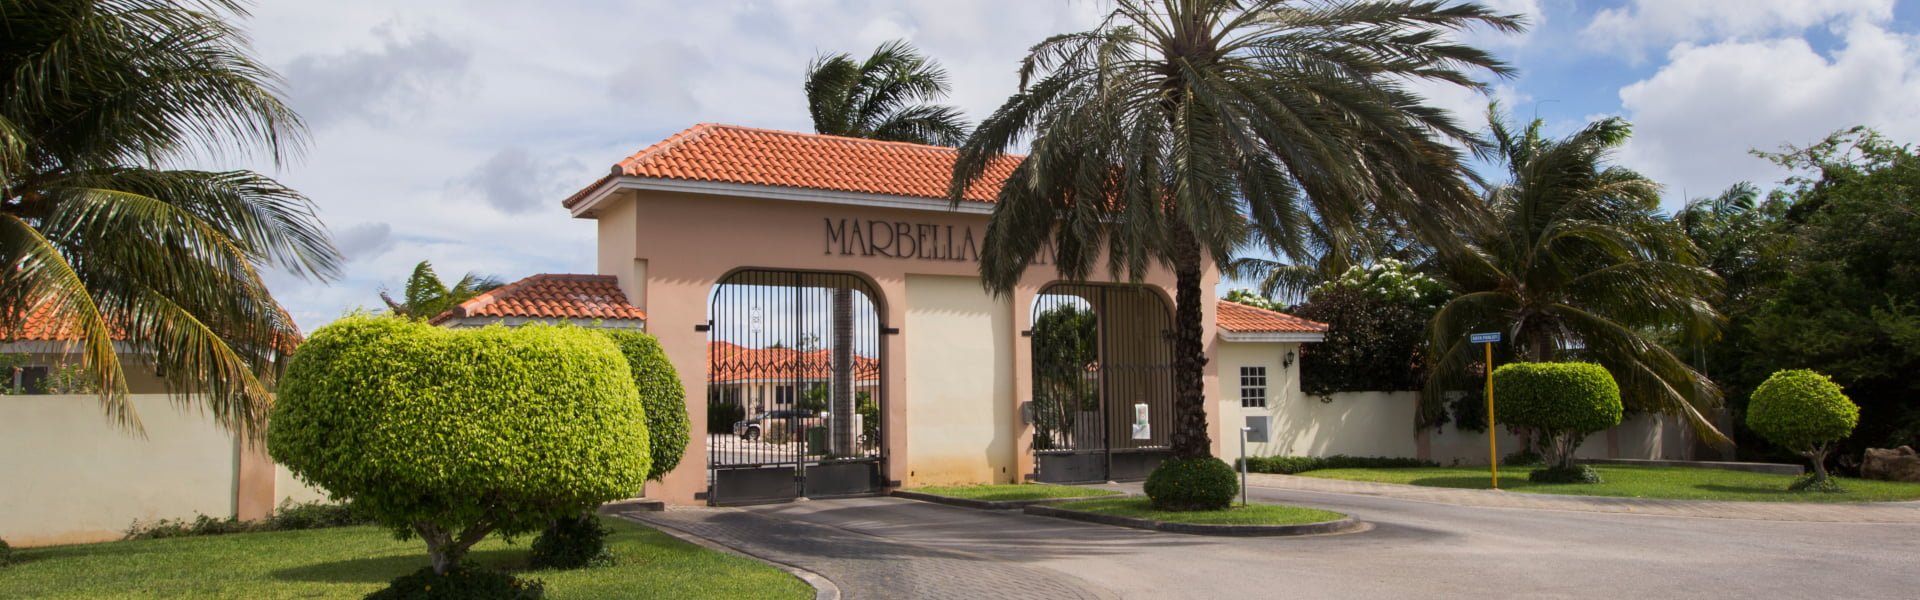 Vakantiehuizen marbella estate resort te huur